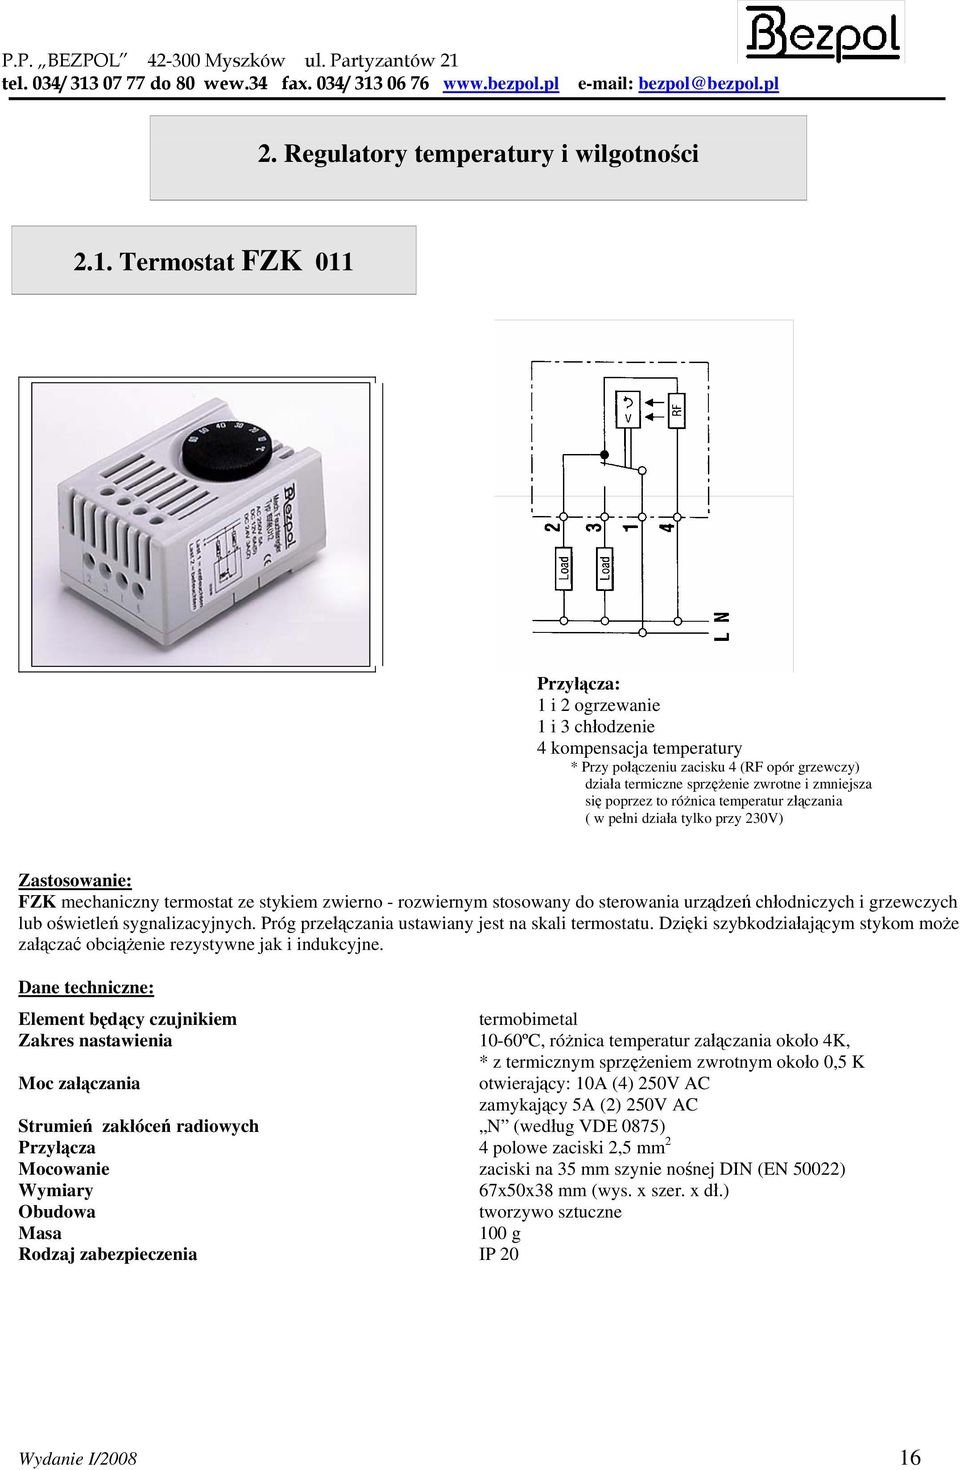 różnica temperatur złączania ( w pełni działa tylko przy 230V) Zastosowanie: FZK mechaniczny termostat ze stykiem zwierno - rozwiernym stosowany do sterowania urządzeń chłodniczych i grzewczych lub